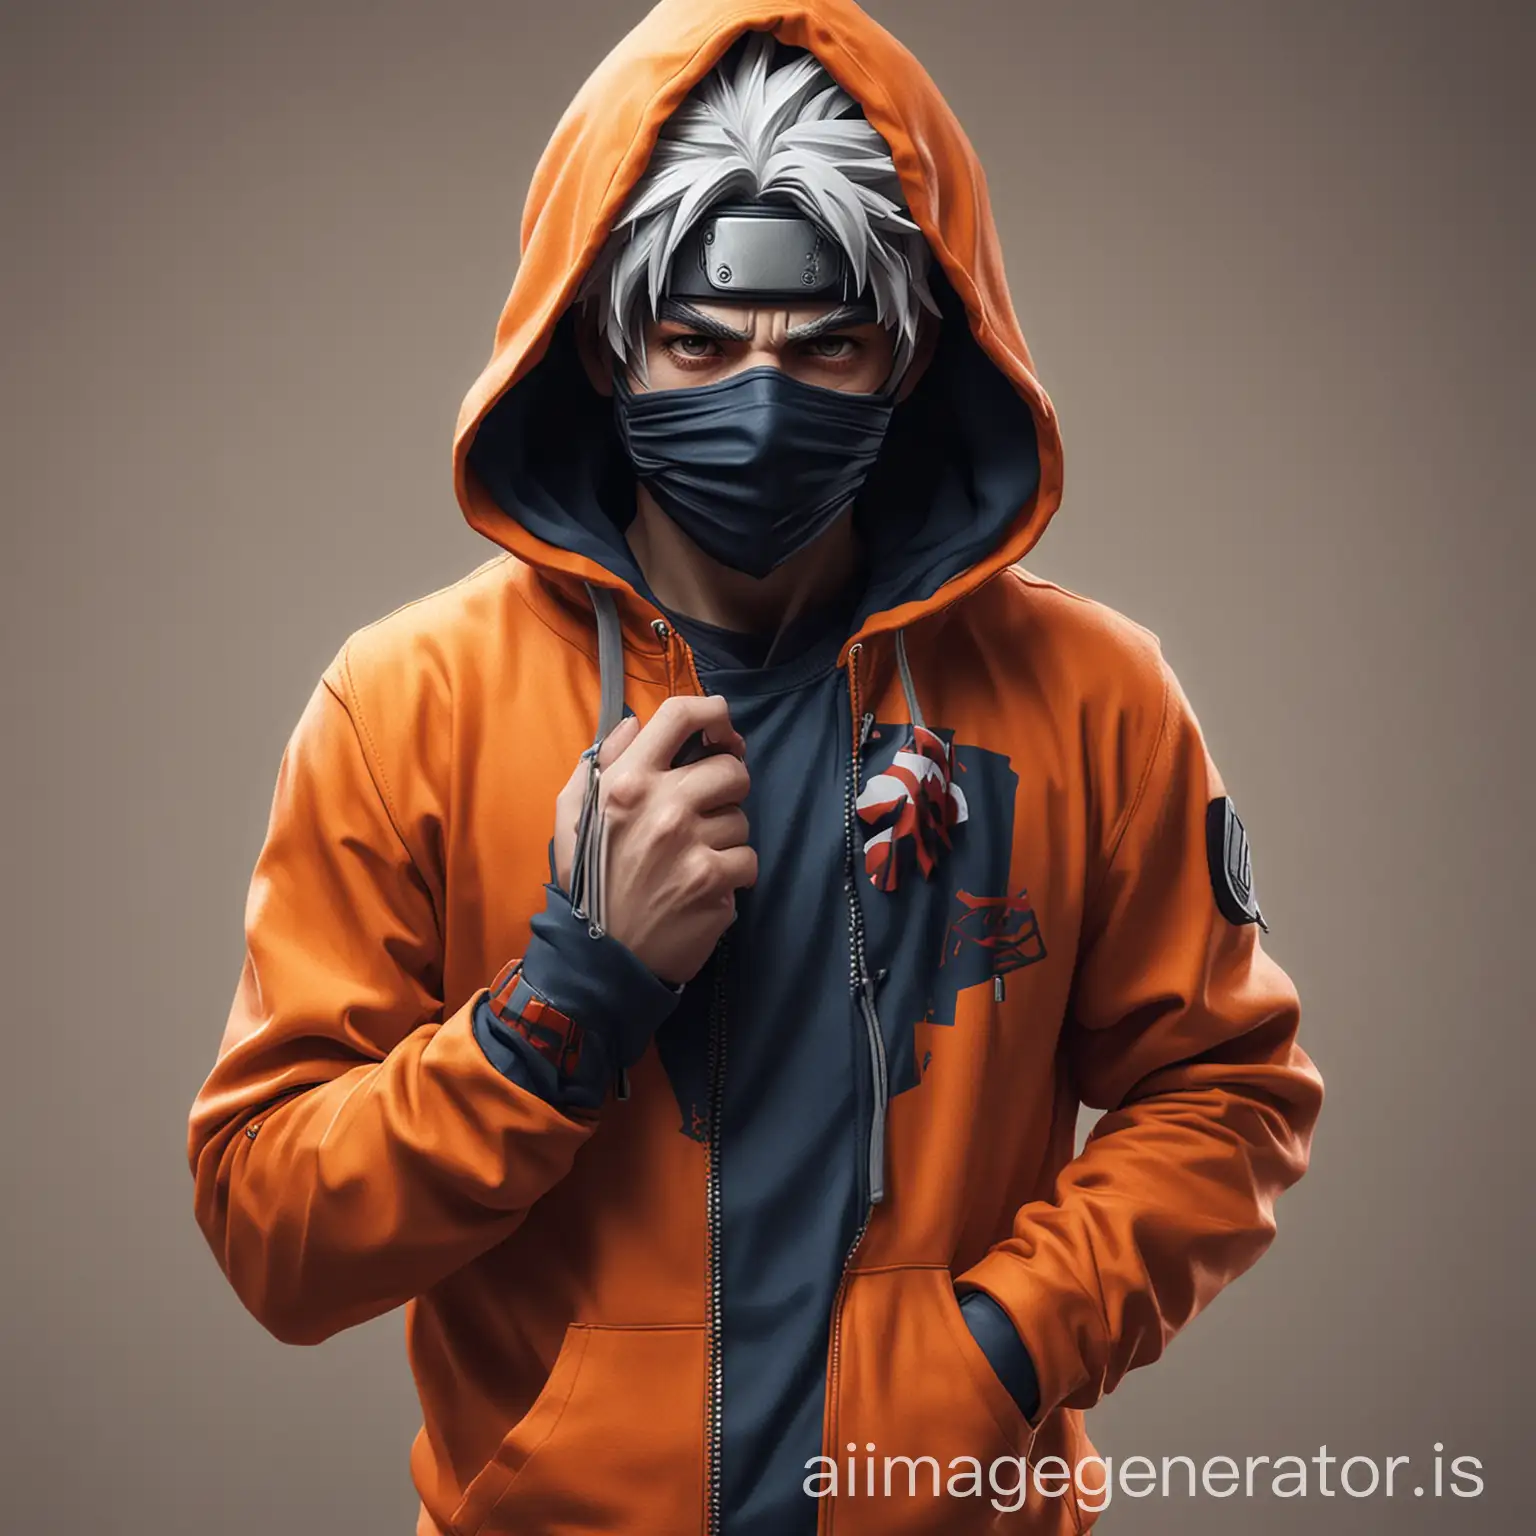 kakashi with mask wearing orange hoodie